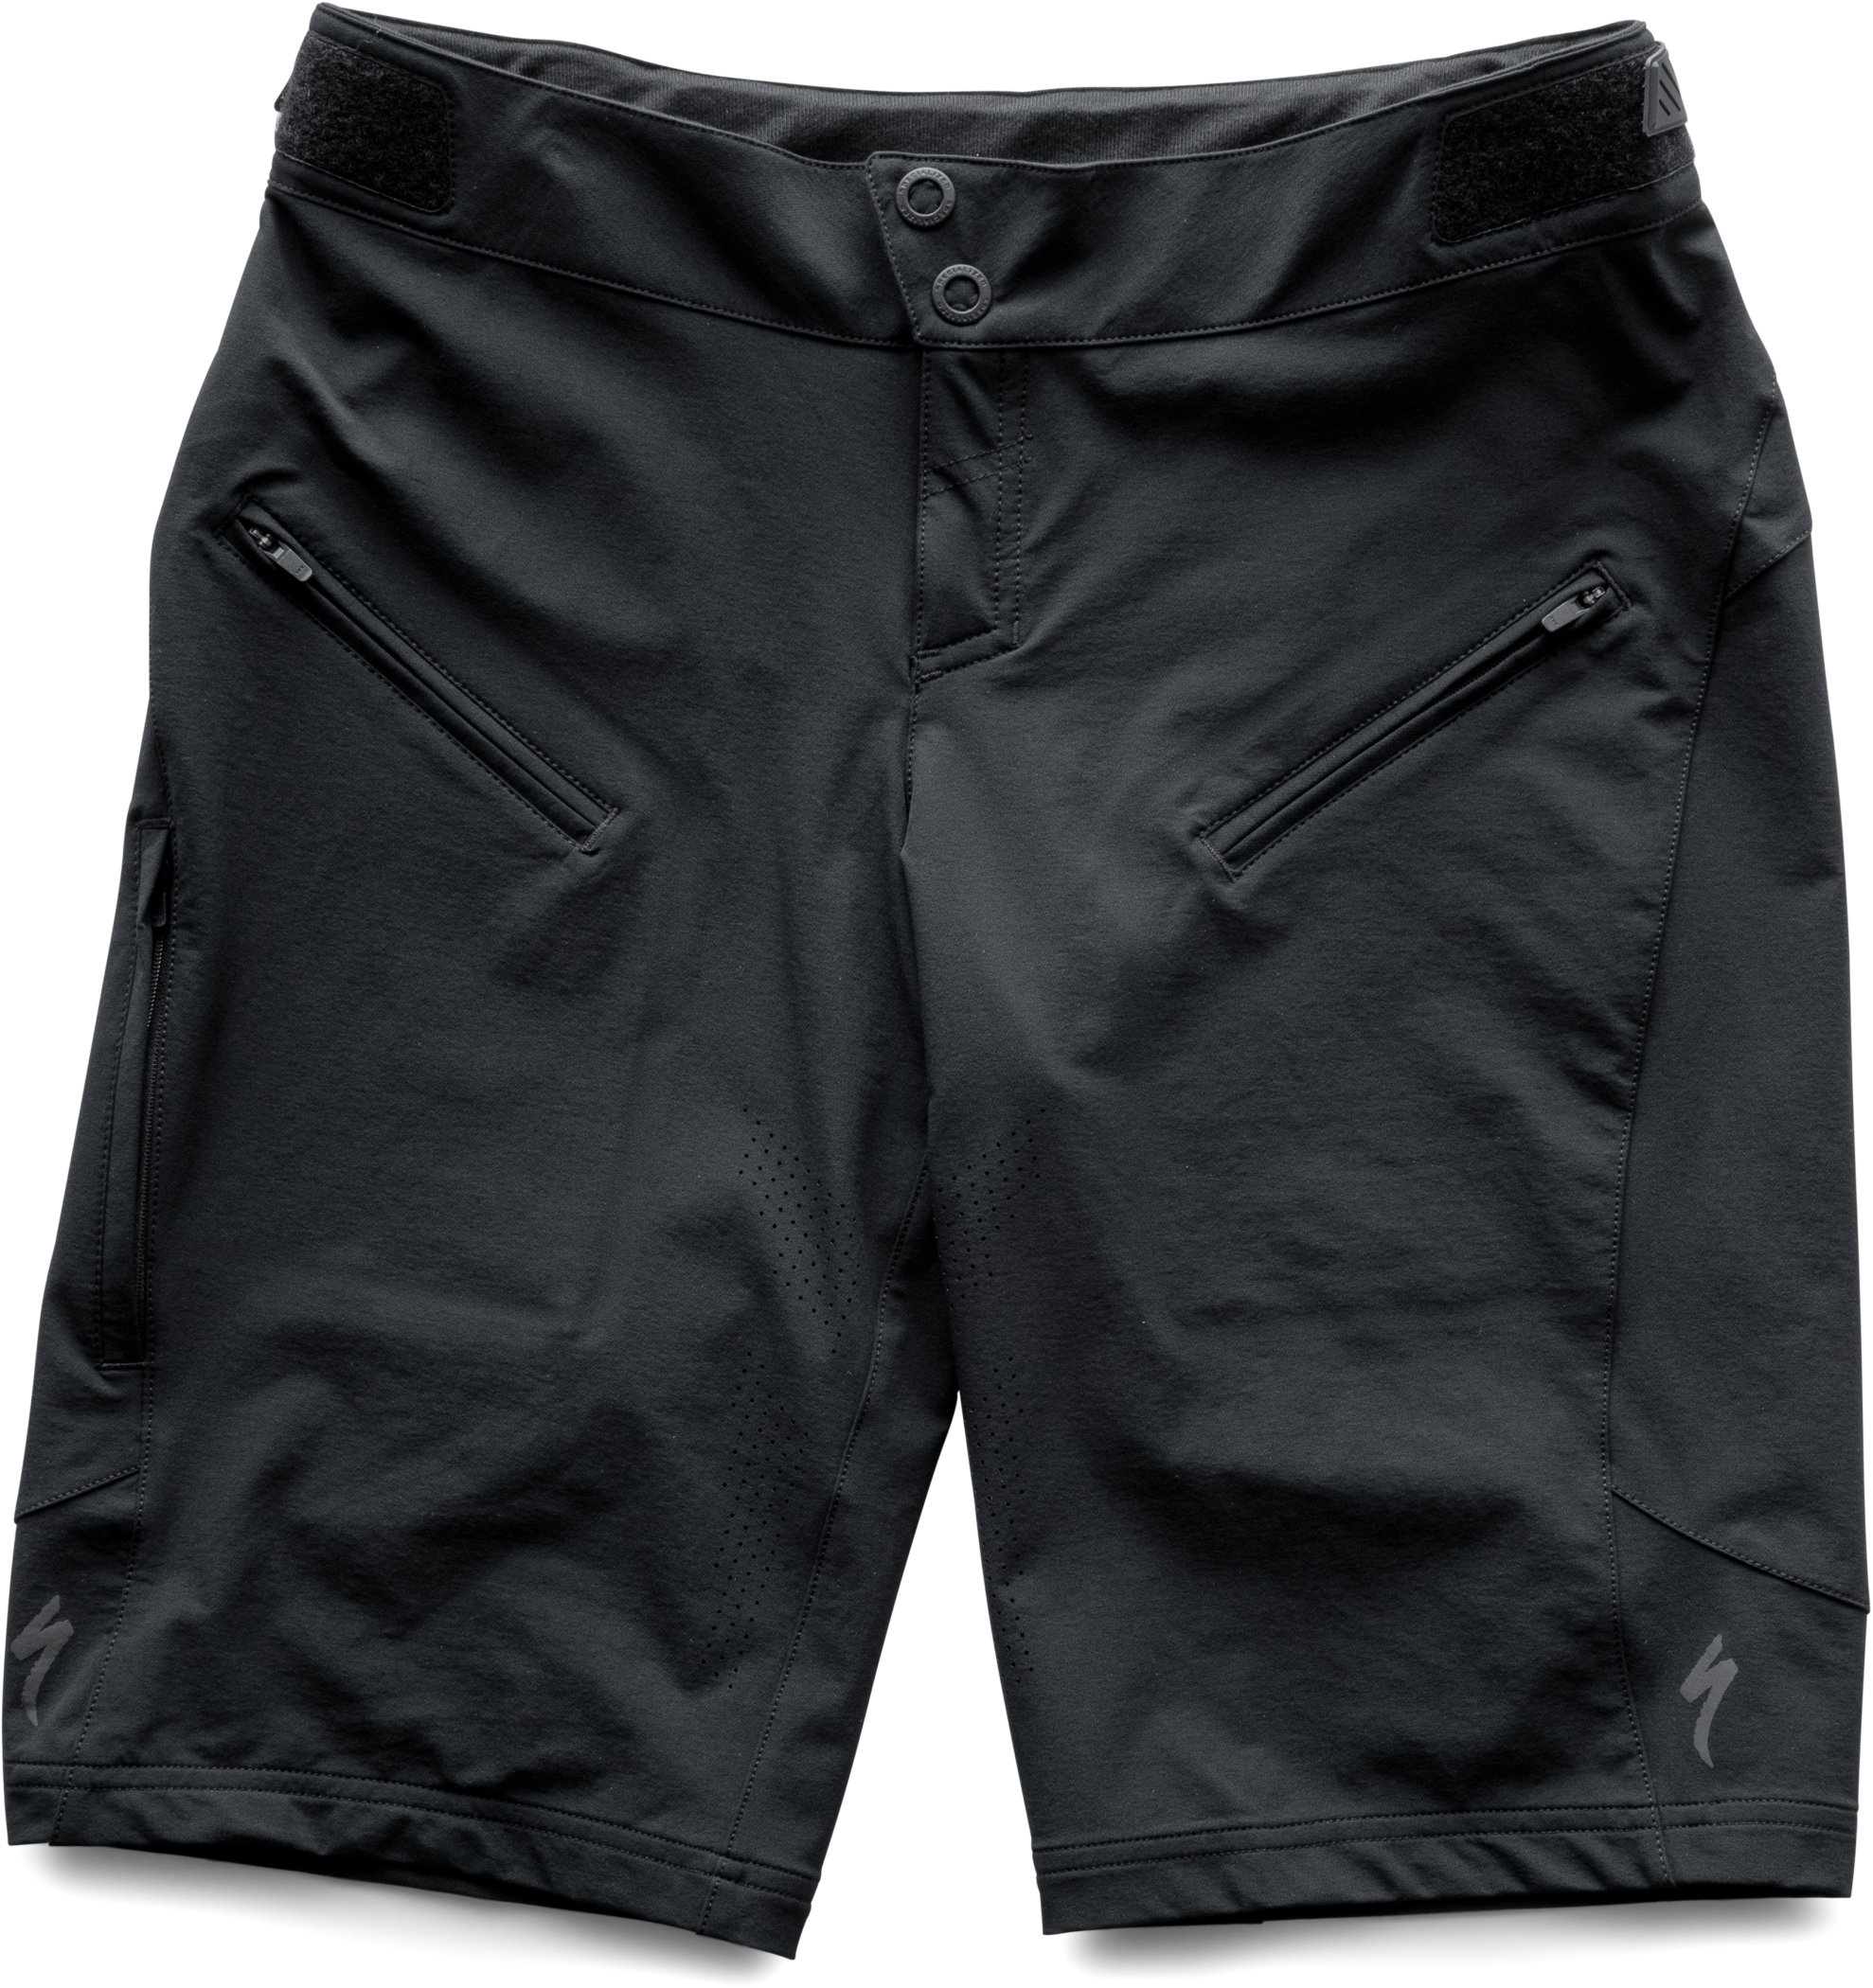 Andorra Pro Shorts | Specialized.com